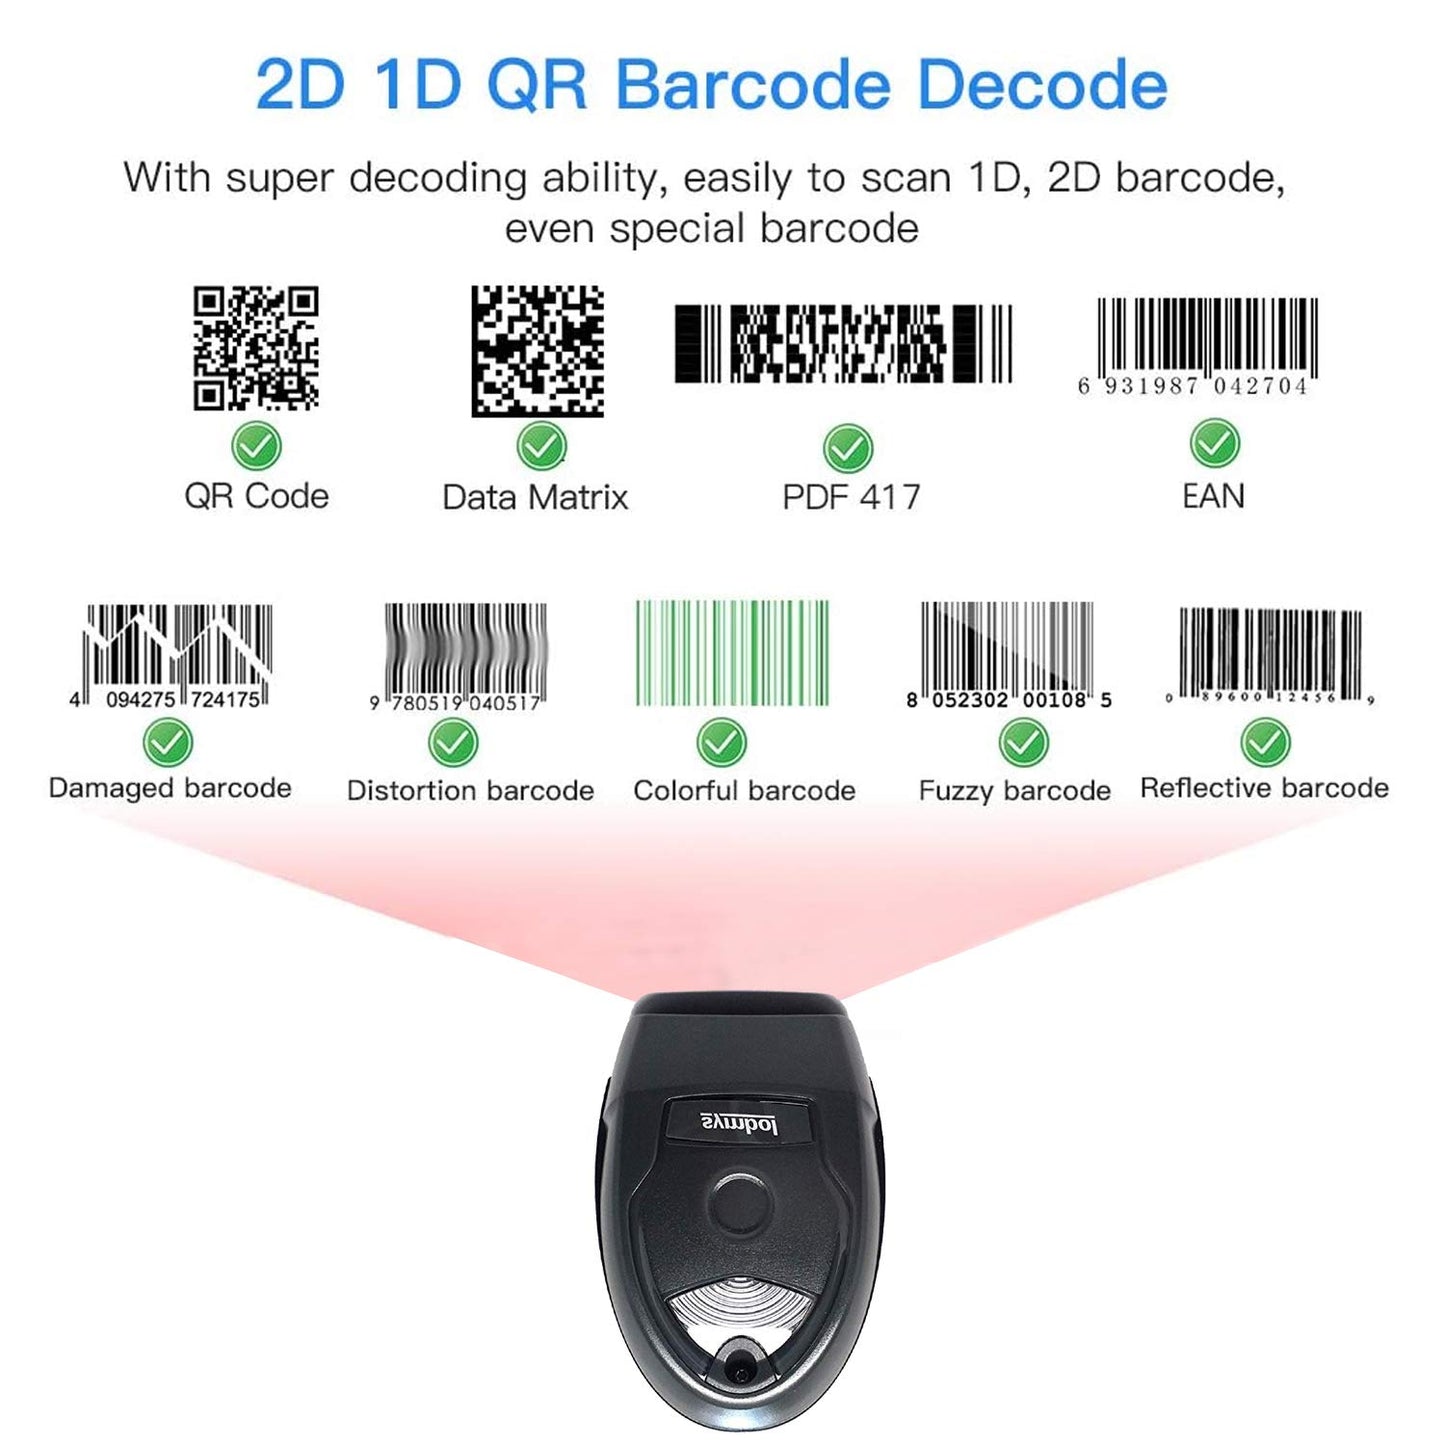 Zebra LI4278 Wireless Bluetooth 1D Barcode Scanner